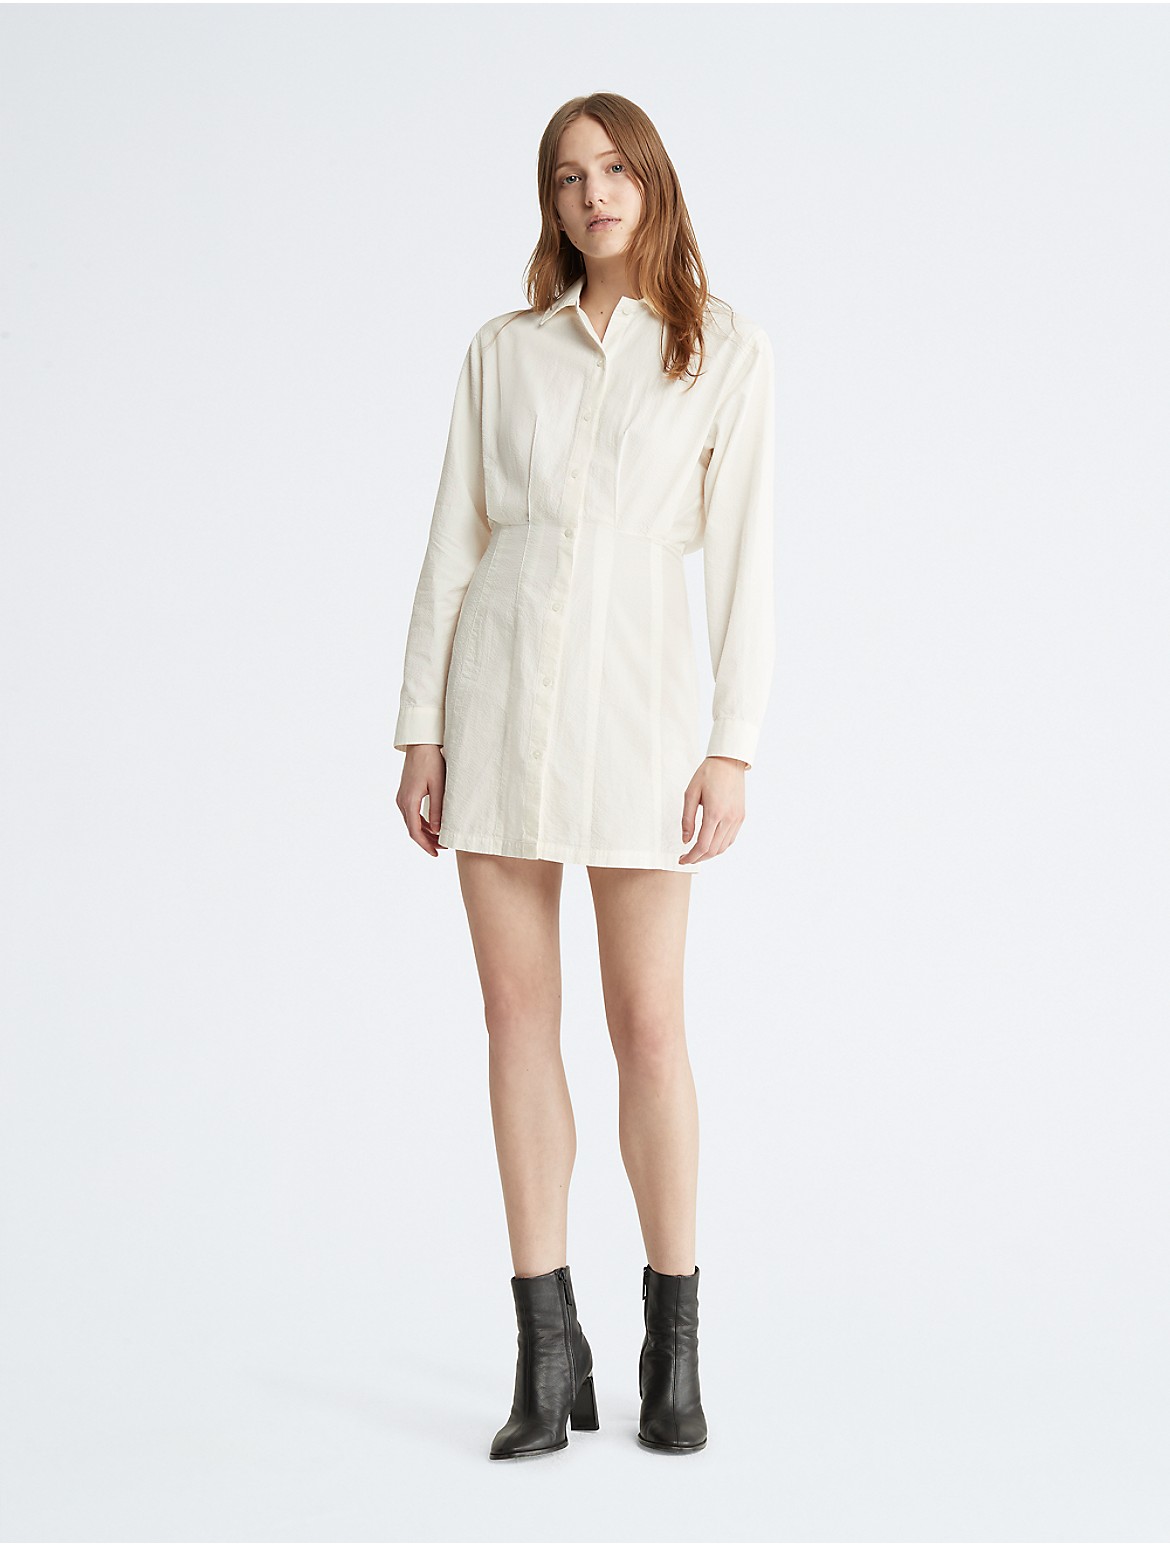 Calvin Klein Women's Button-Down Seersucker Shirt Dress - White - M